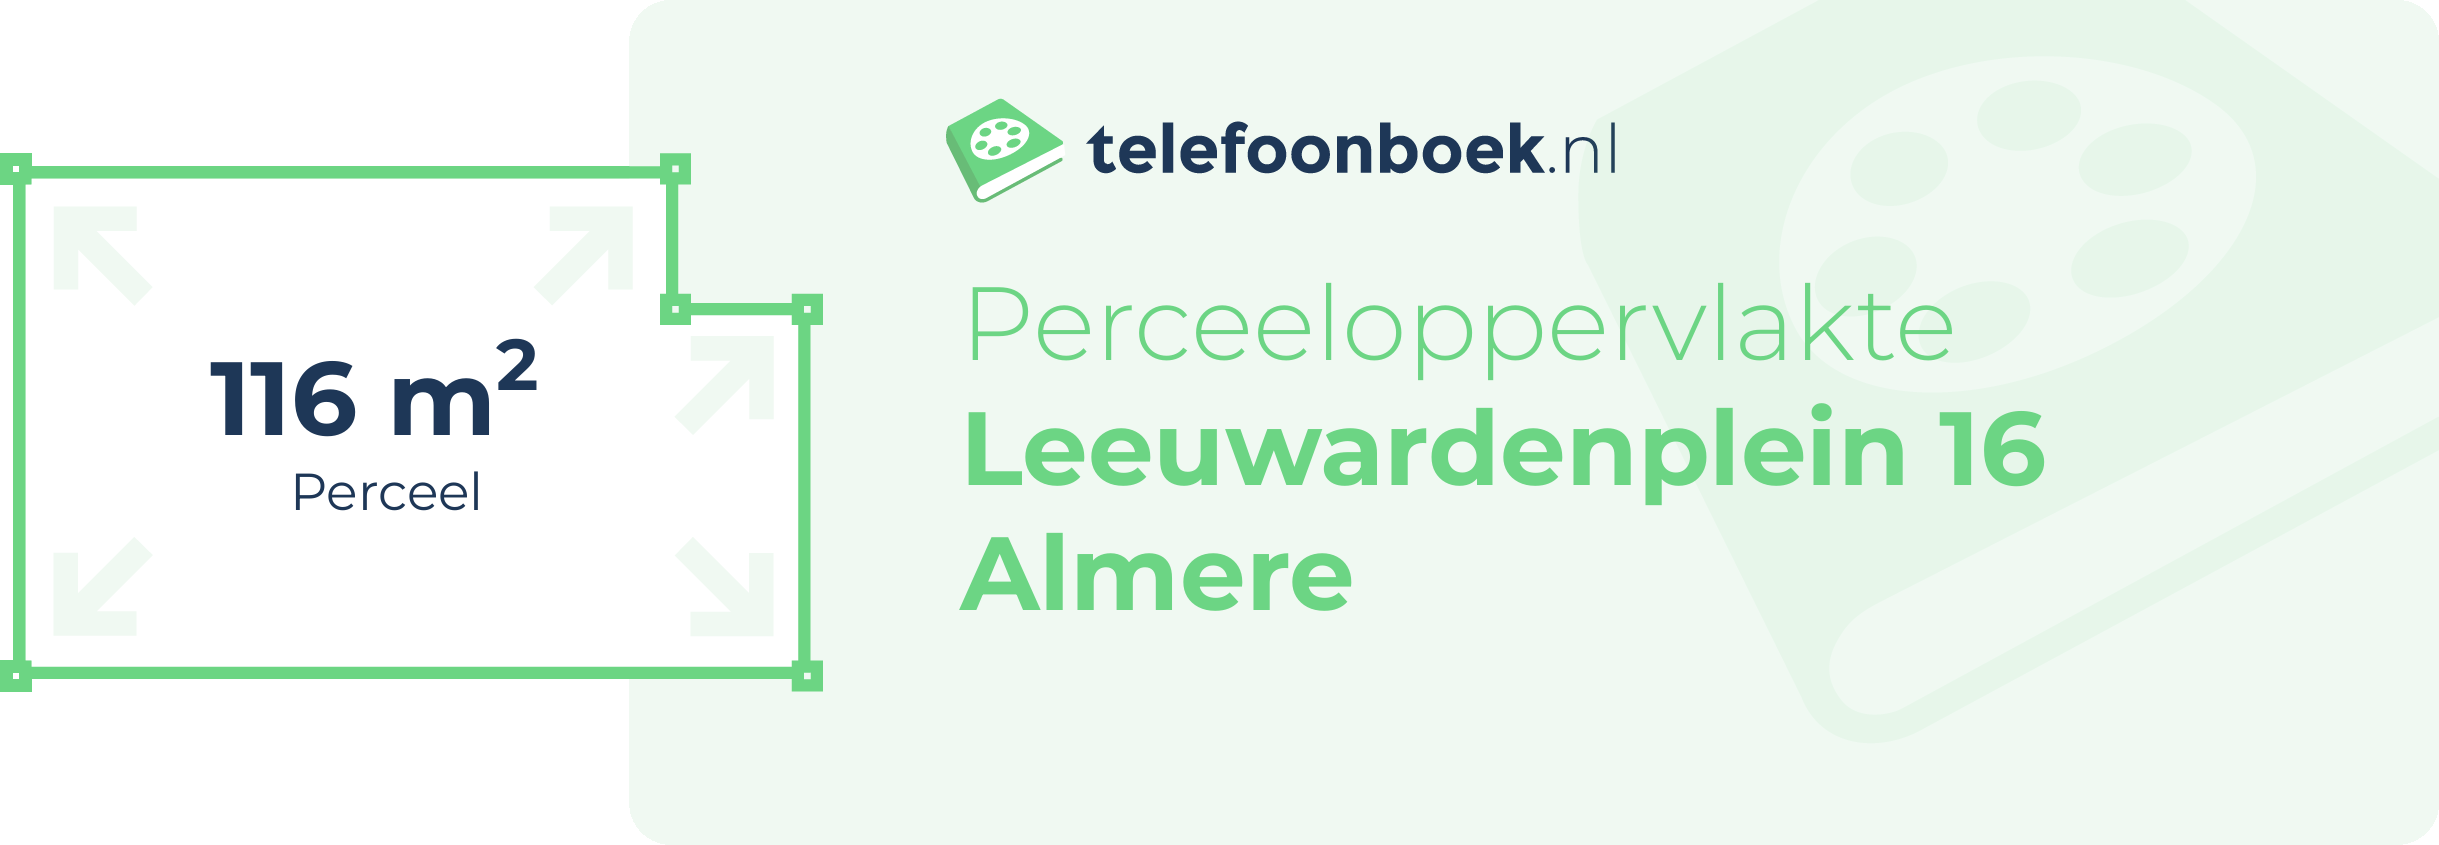 Perceeloppervlakte Leeuwardenplein 16 Almere